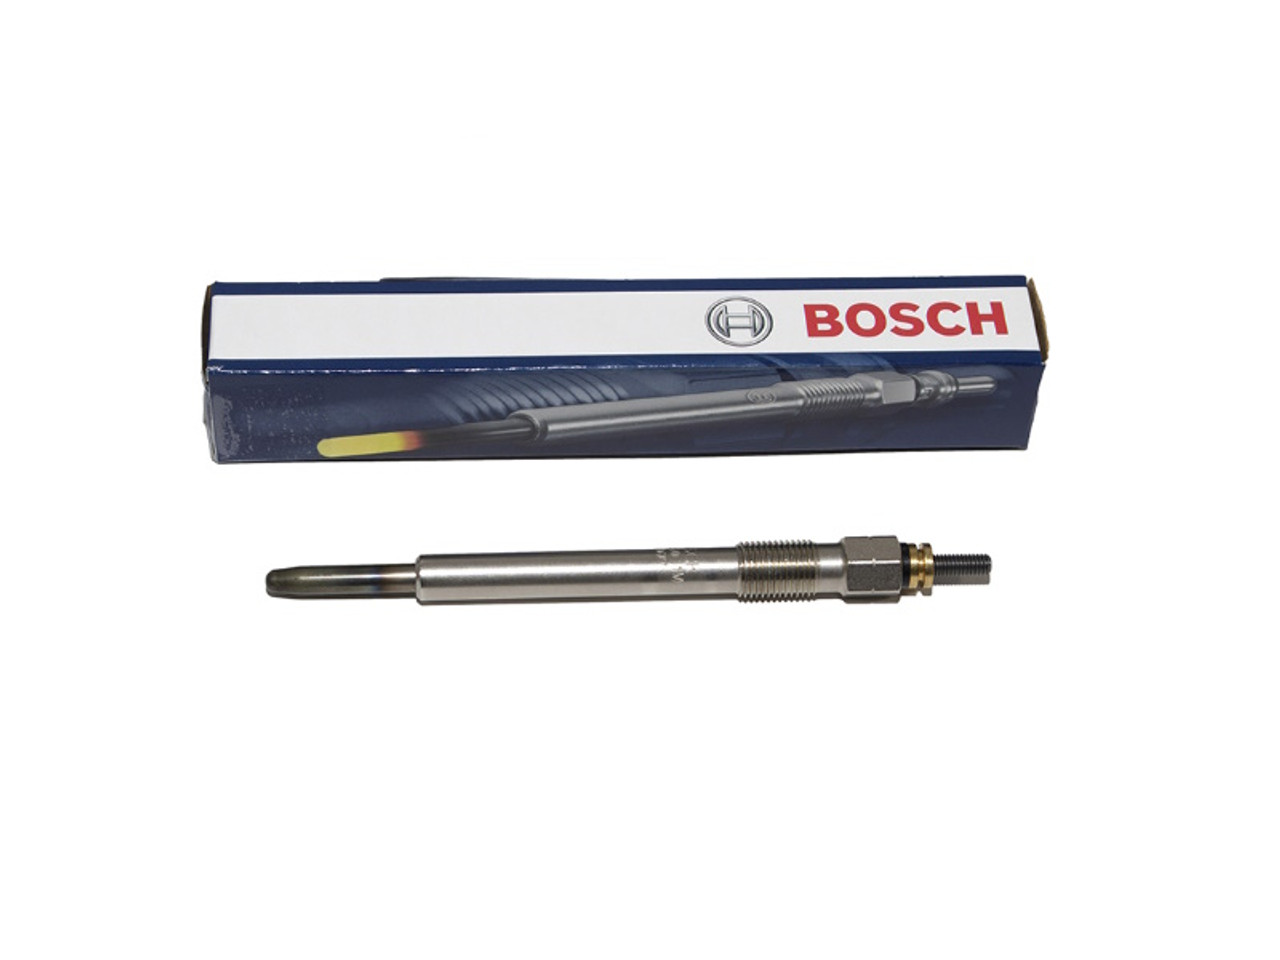 Bosch 300Tdi Glow Plug or Heater Plug - ETC8847